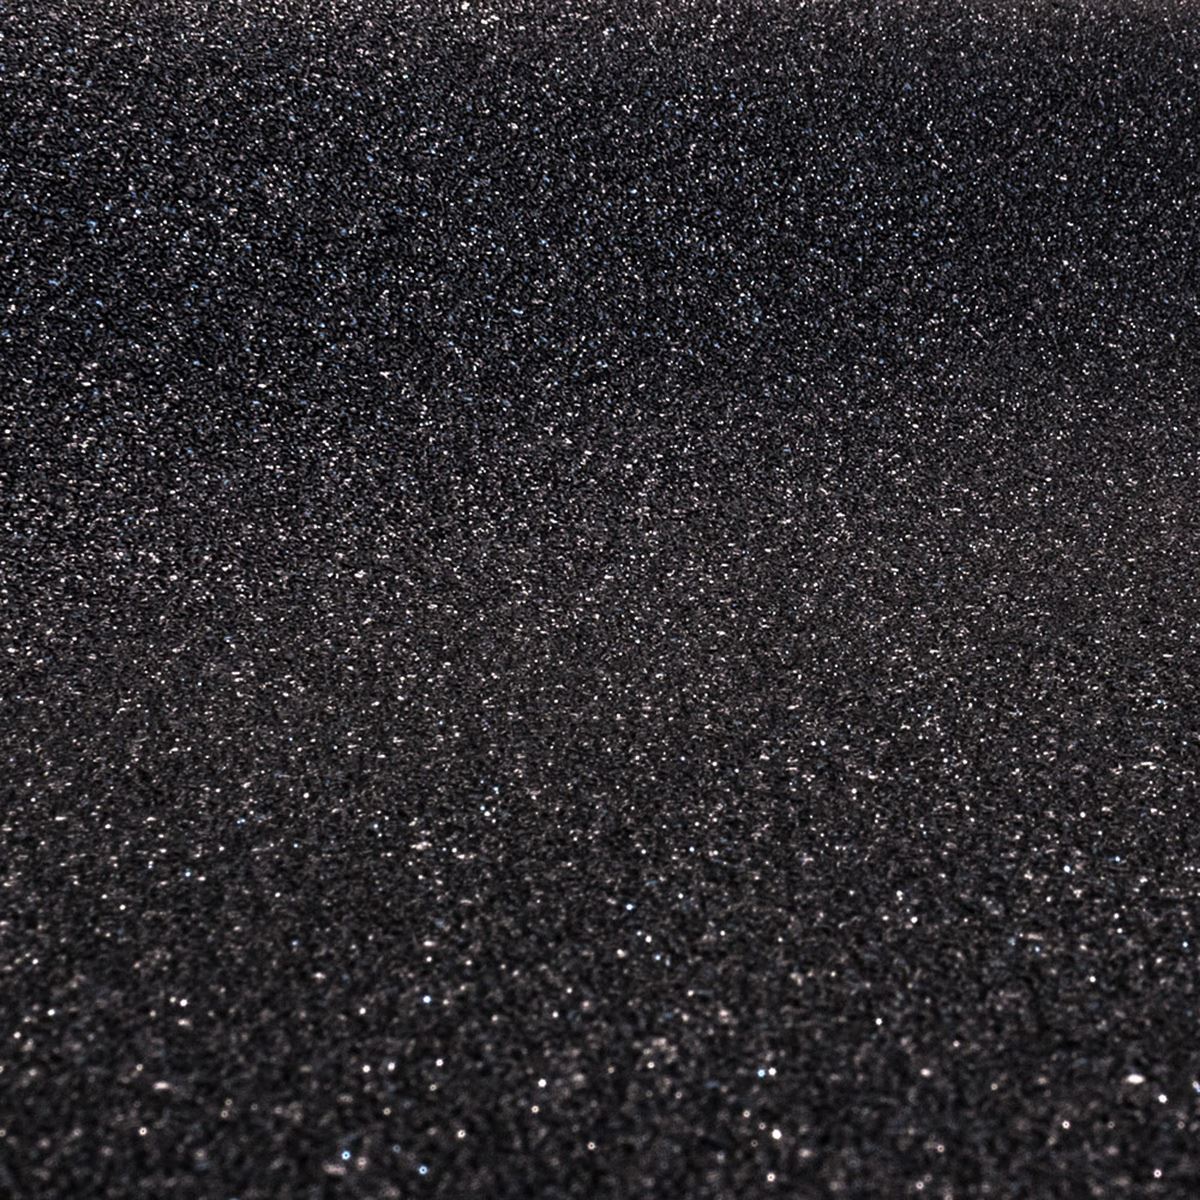 schwarz und silber glitzertapete,schwarz,asphalt,granit,metall,fußboden